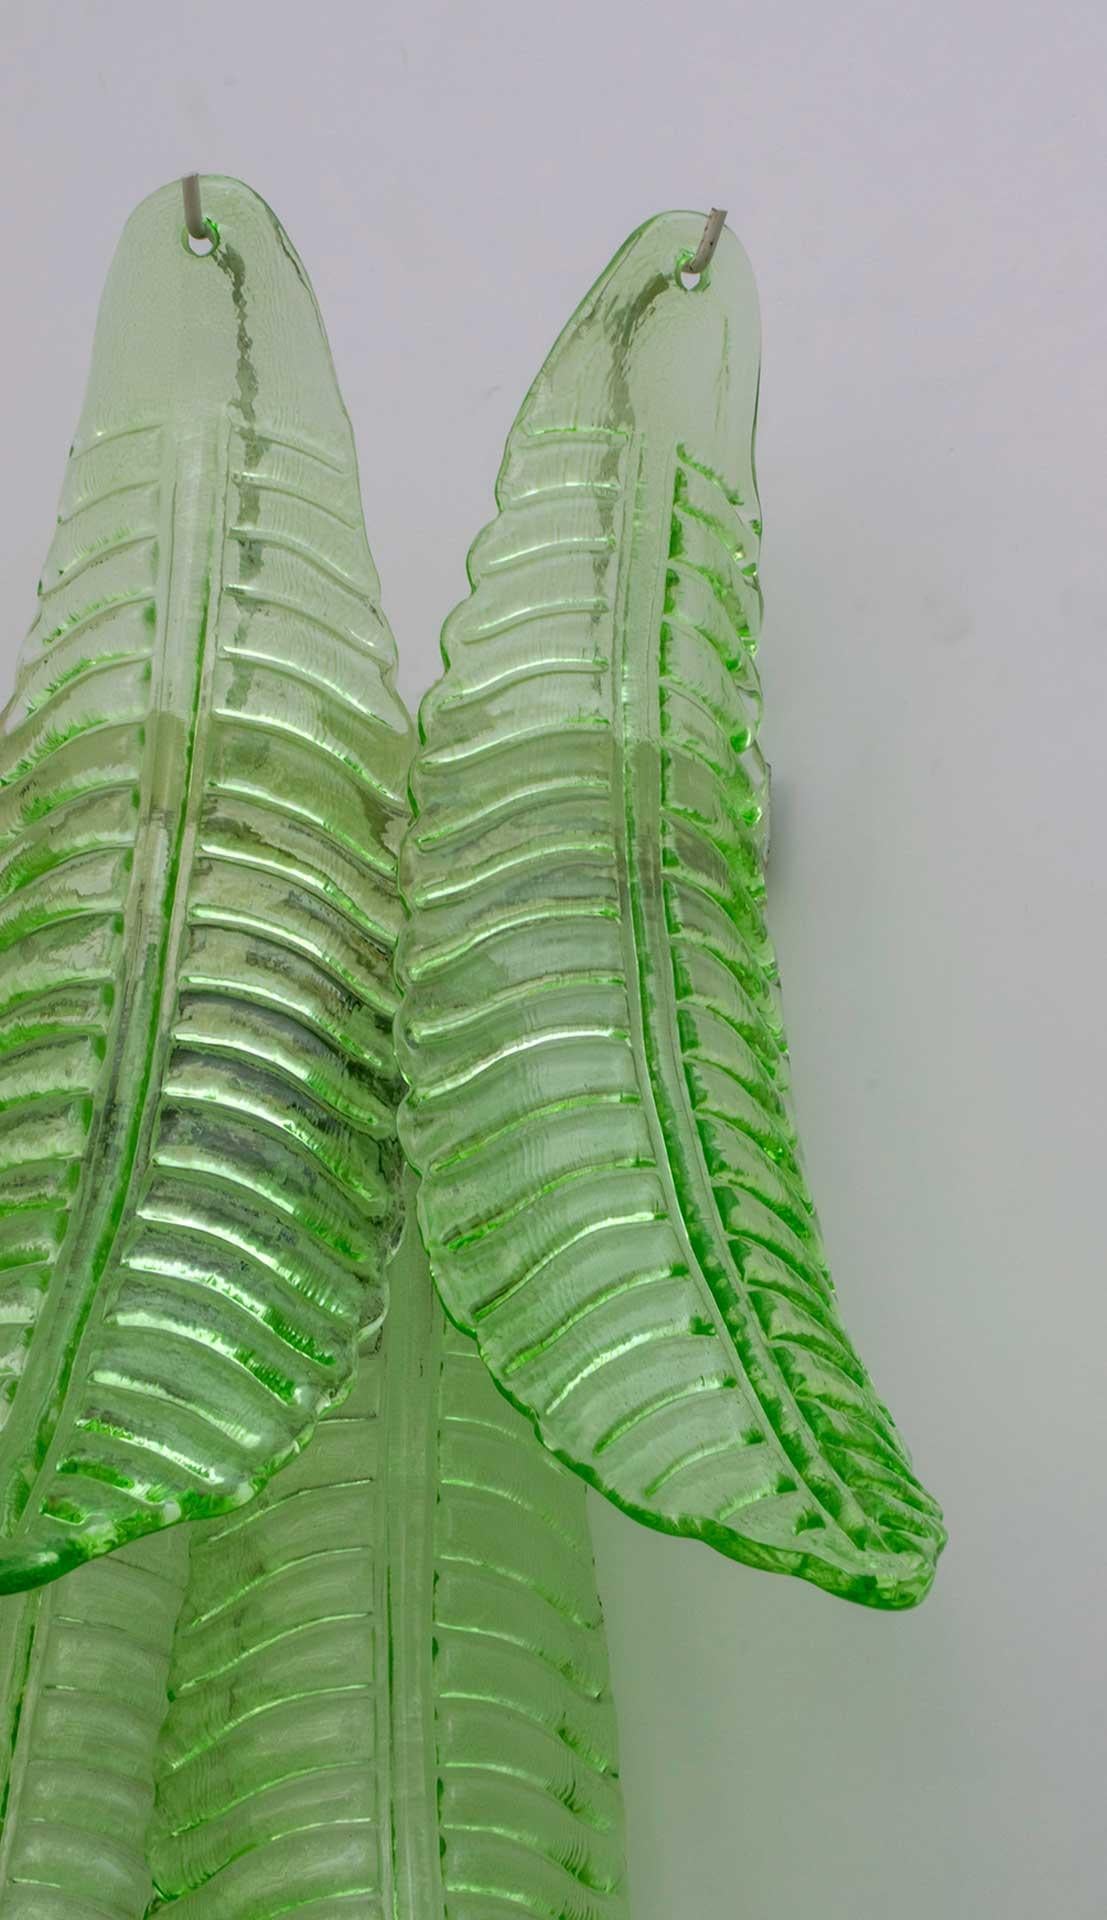 Paire d'appliques en verre soufflé vert de Murano, support en métal, deux ampoules.
Ces appliques sont également des sculptures qui reproduisent les feuilles d'un palmier.